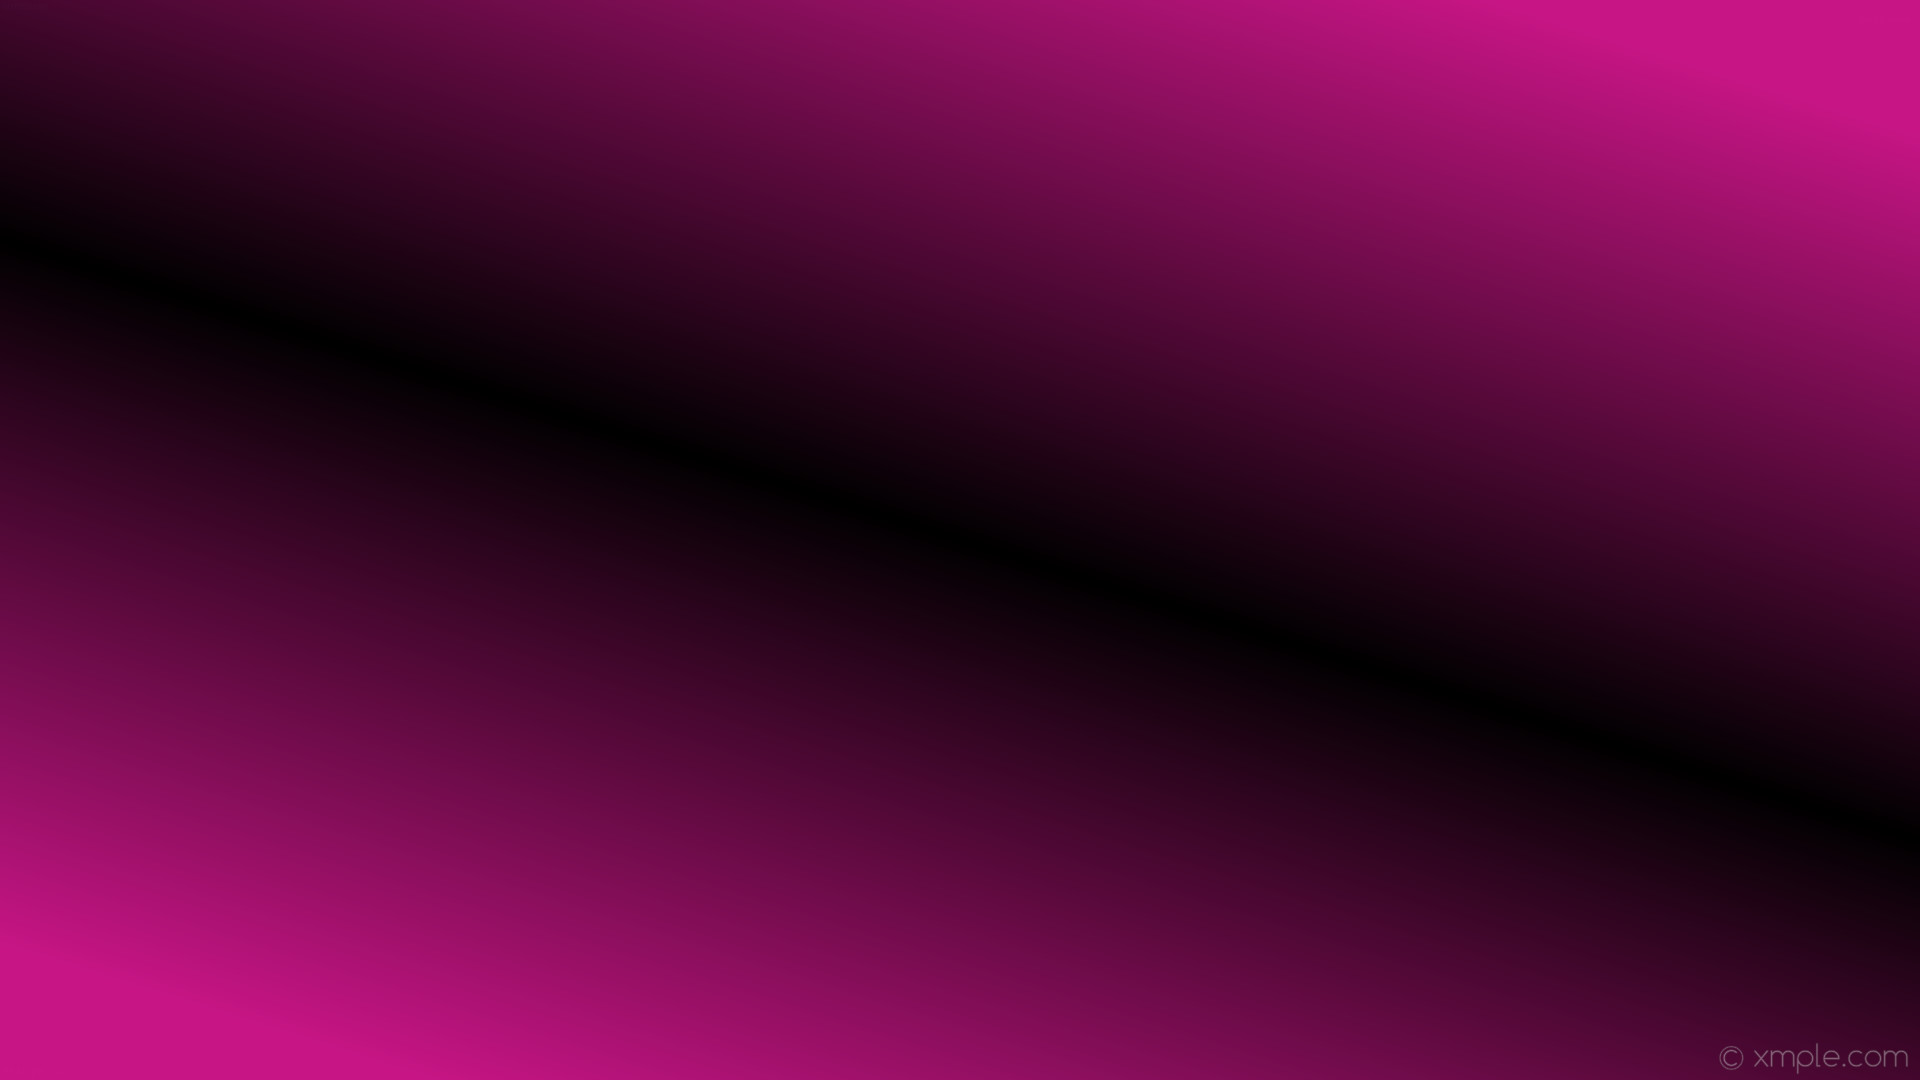 1920x1080 wallpaper gradient linear highlight pink black medium violet red #c71585  #000000 225Â° 50